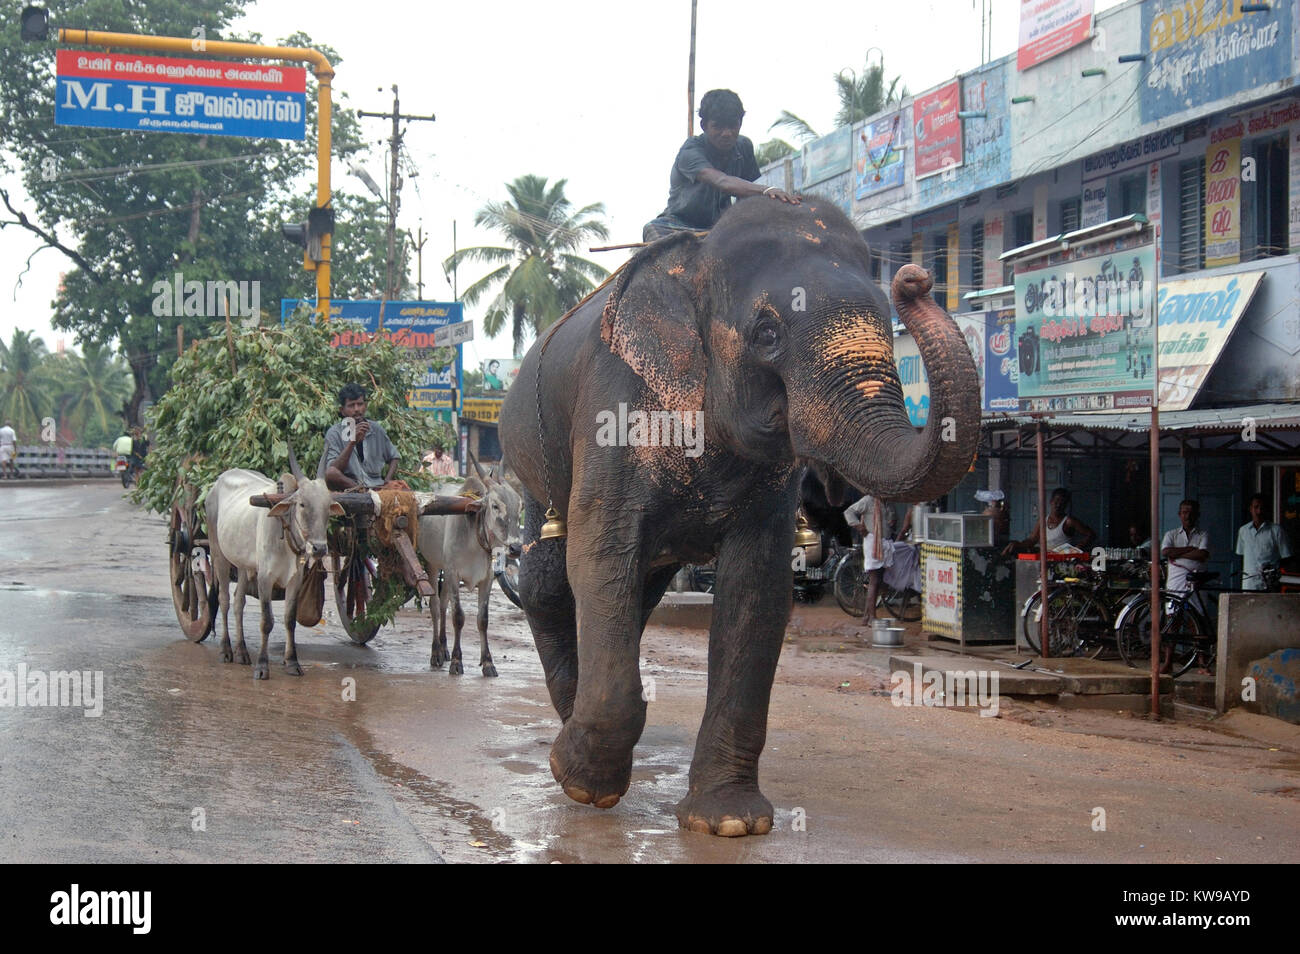 TAMIL NADU, INDIEN, ca. 2009: Ein unbekannter Mann und seine Elefanten in die Stadt kommen, etwa in Tamil Nadu, Indien 2009. Elefanten sind immer noch in ländlichen Ein verwendet Stockfoto